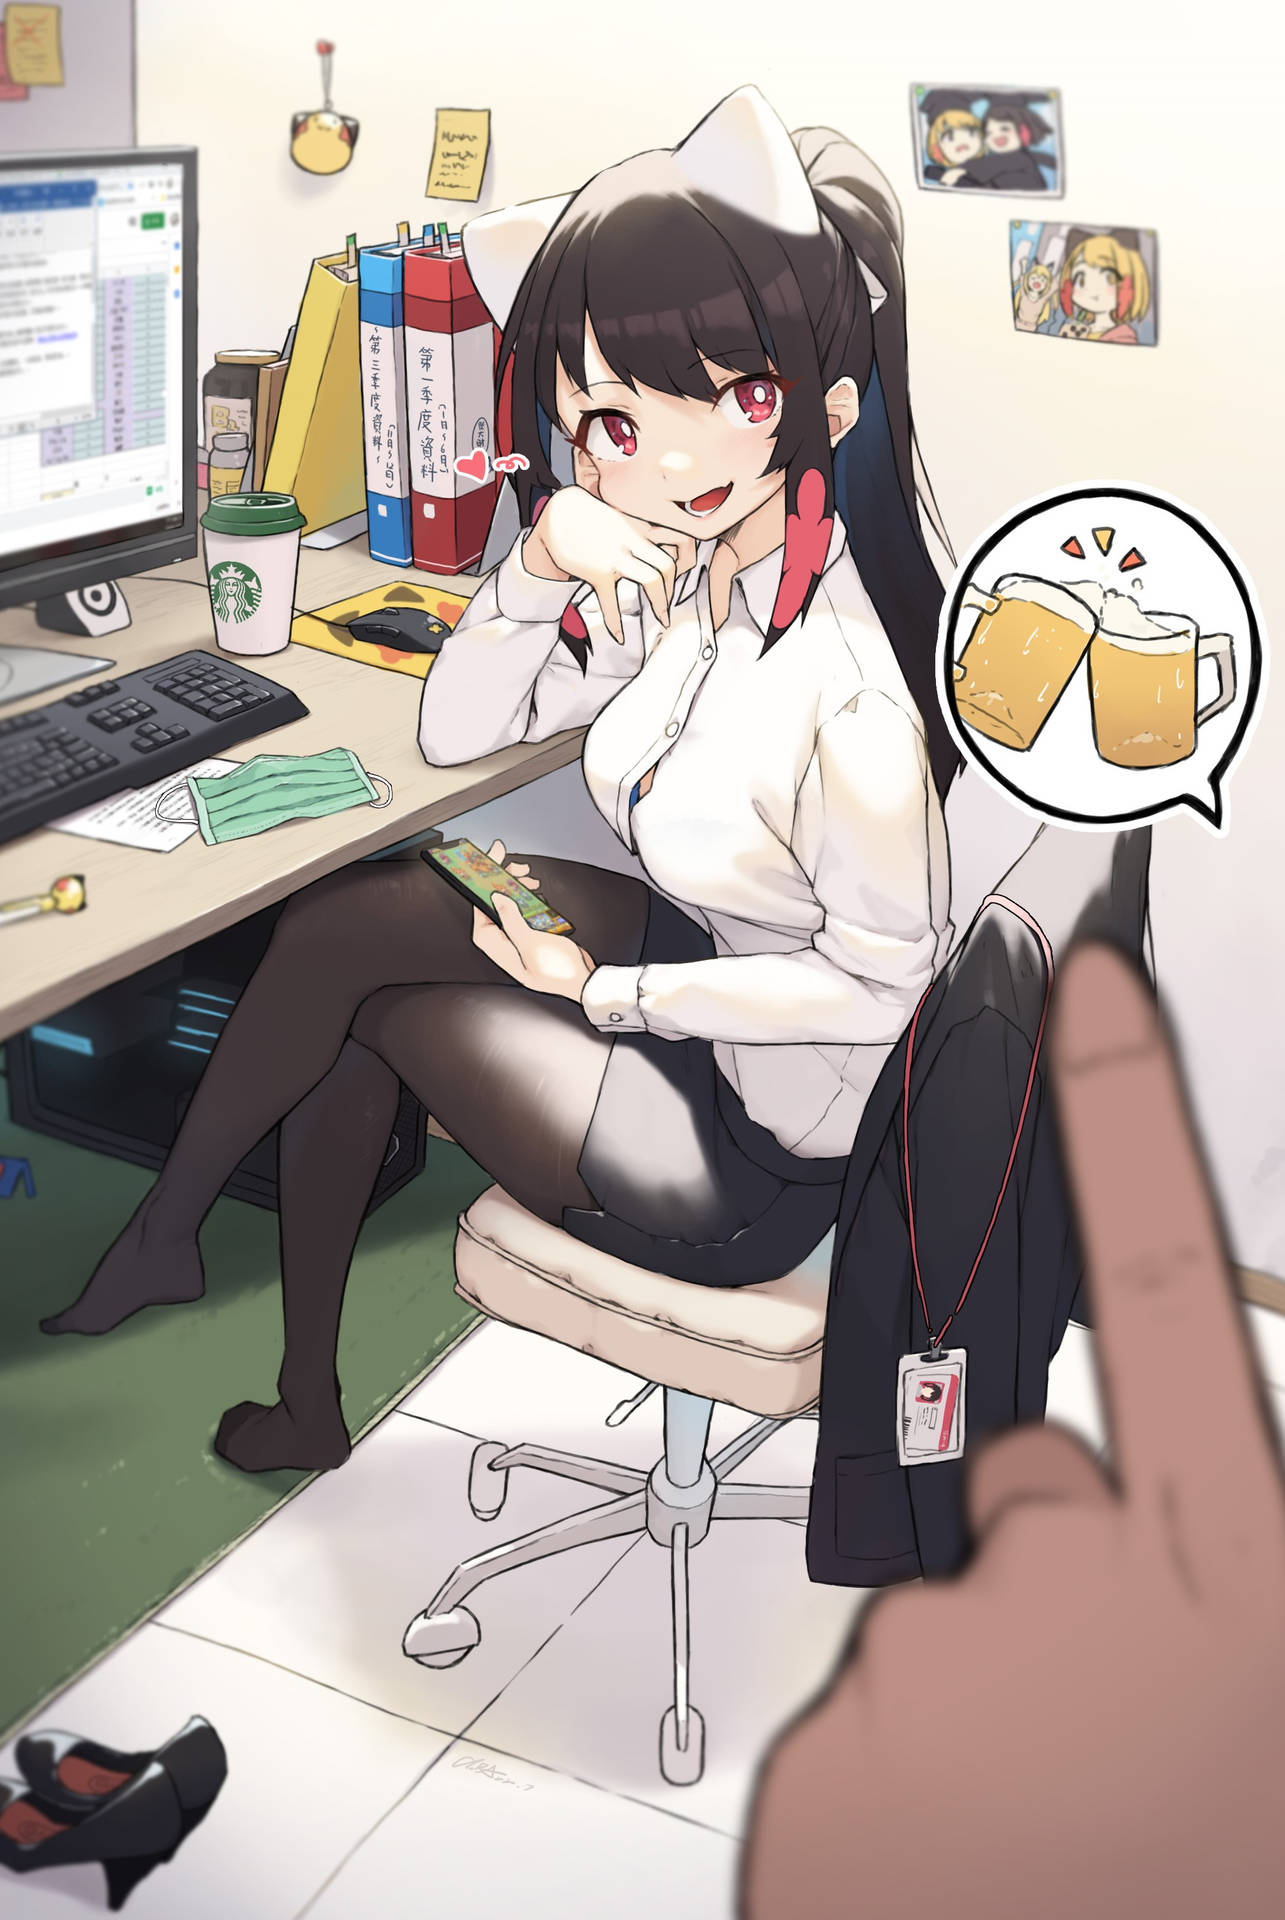 Office Catgirl Background